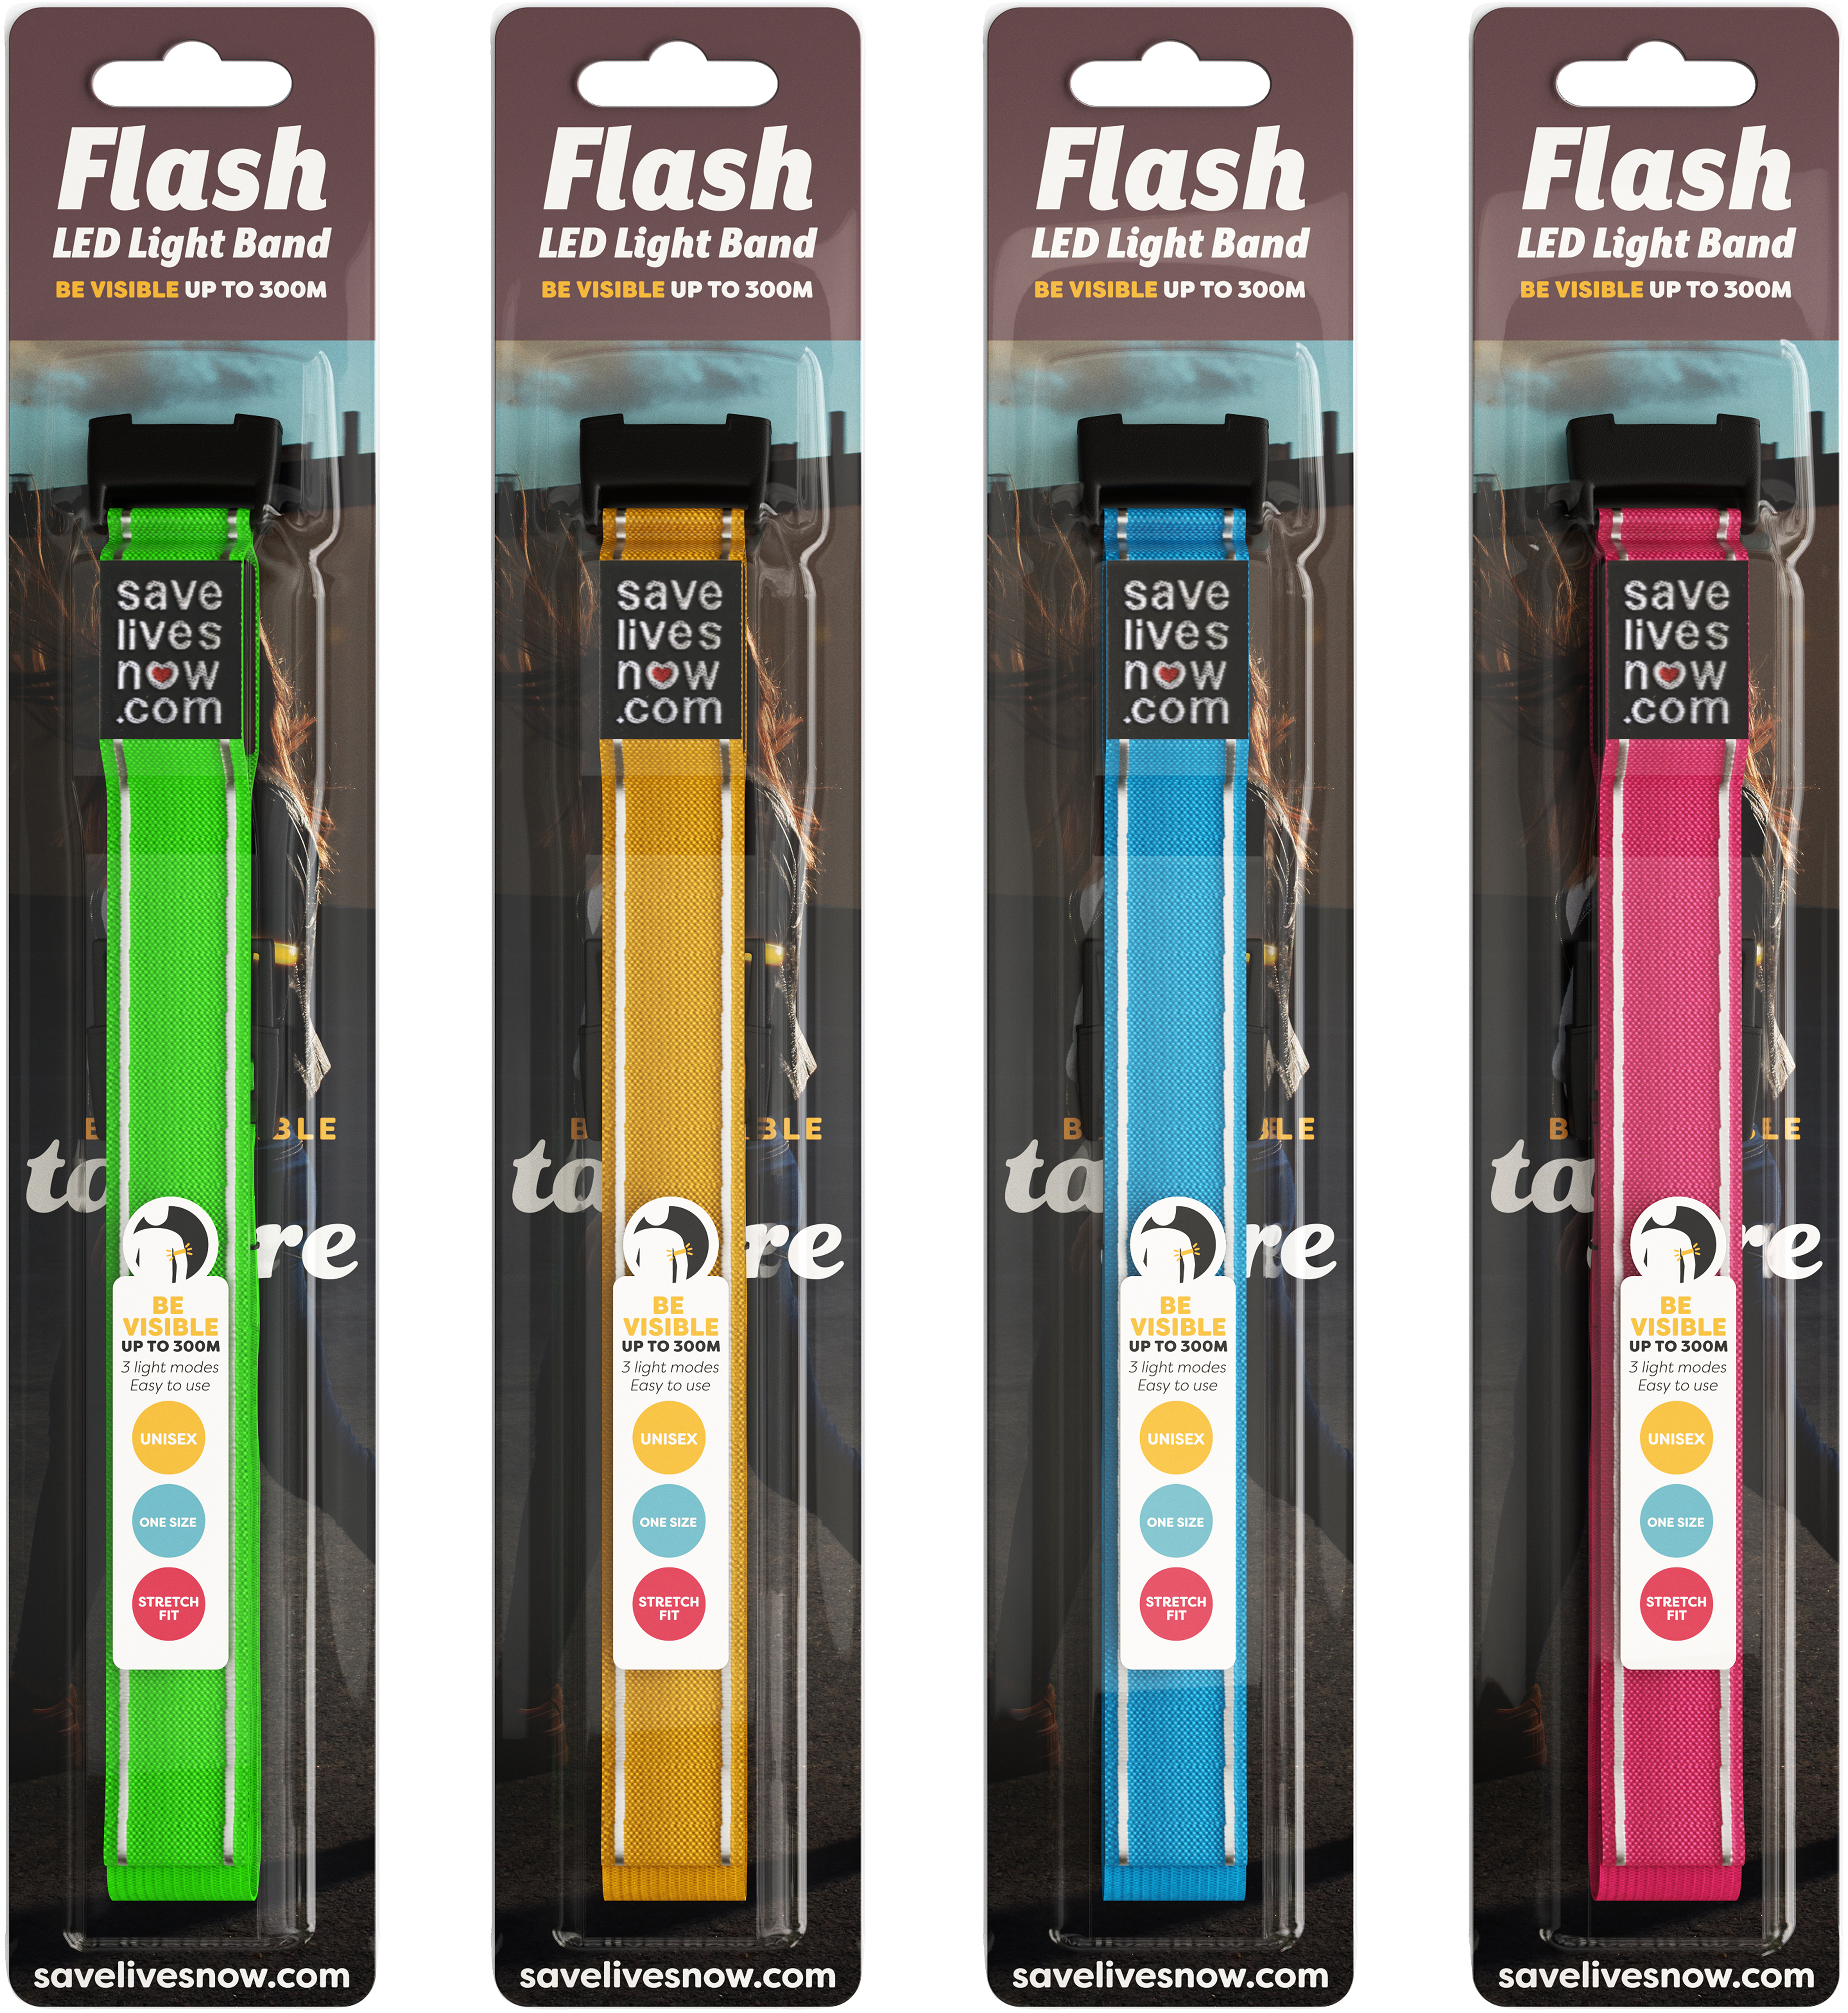 Flash LED Light Band 1 st